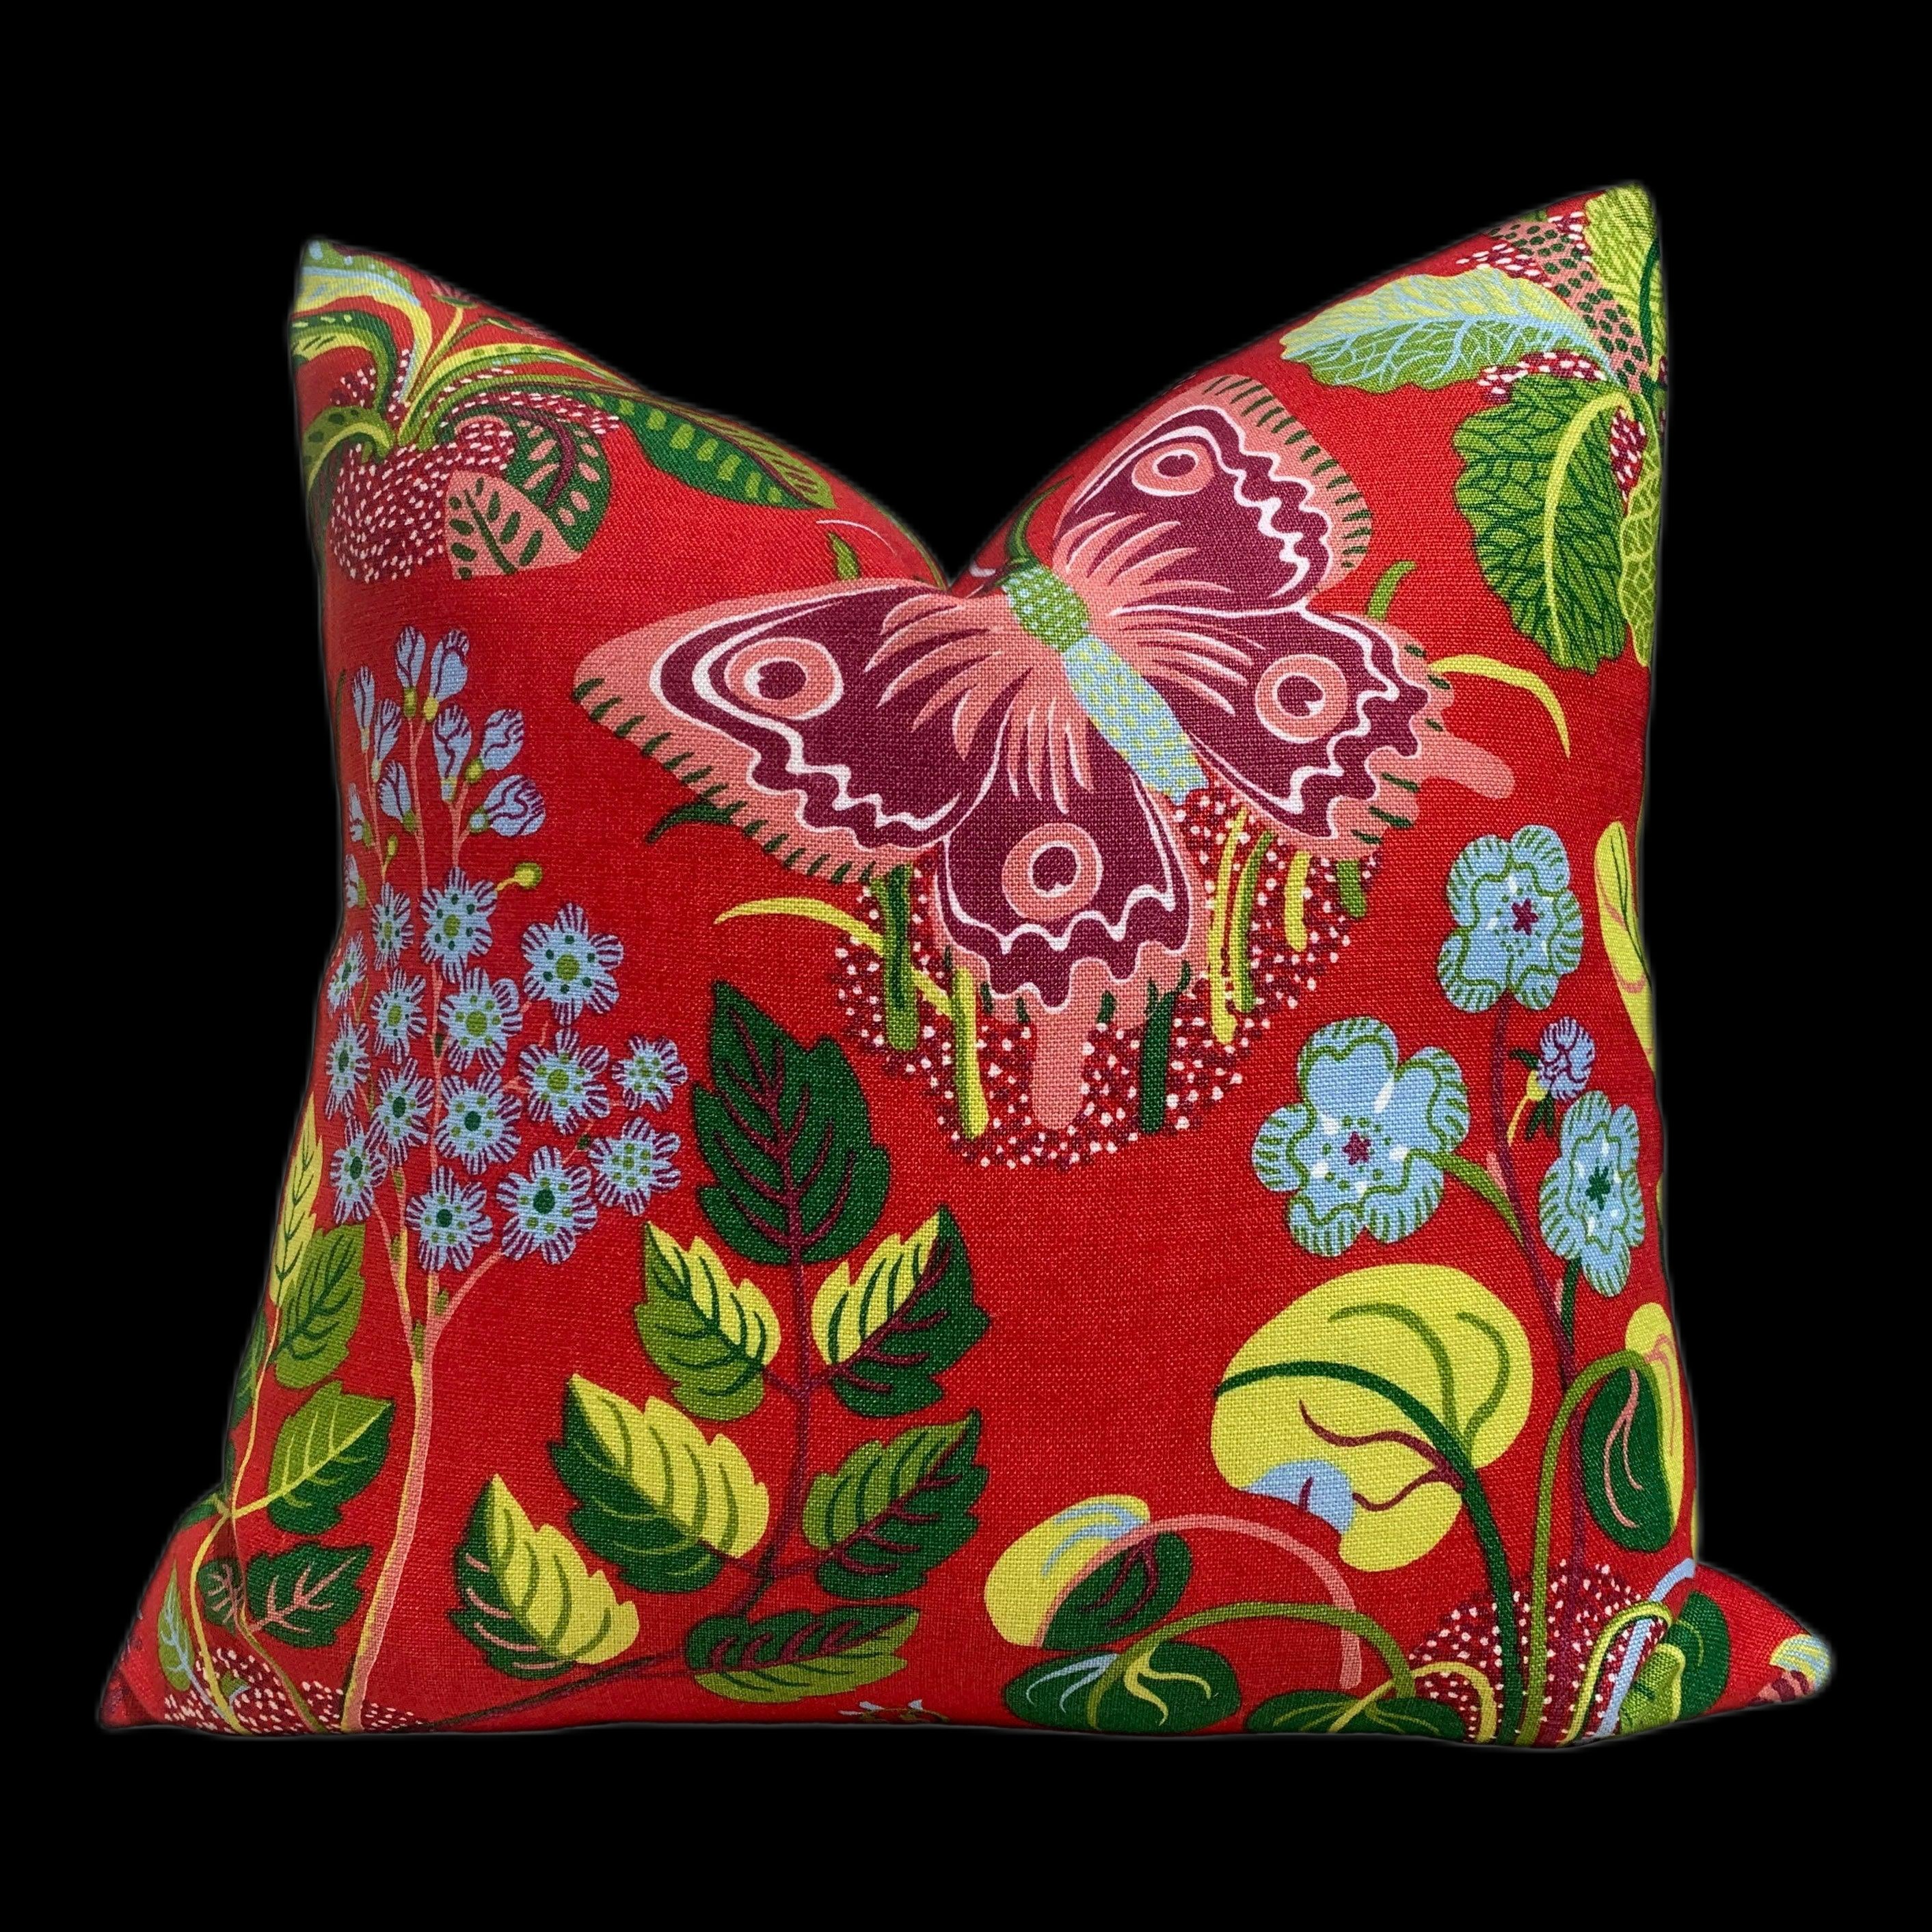 Schumacher Magical Garden Pillow in Red. Accent Lumbar Pillow in Lacquer